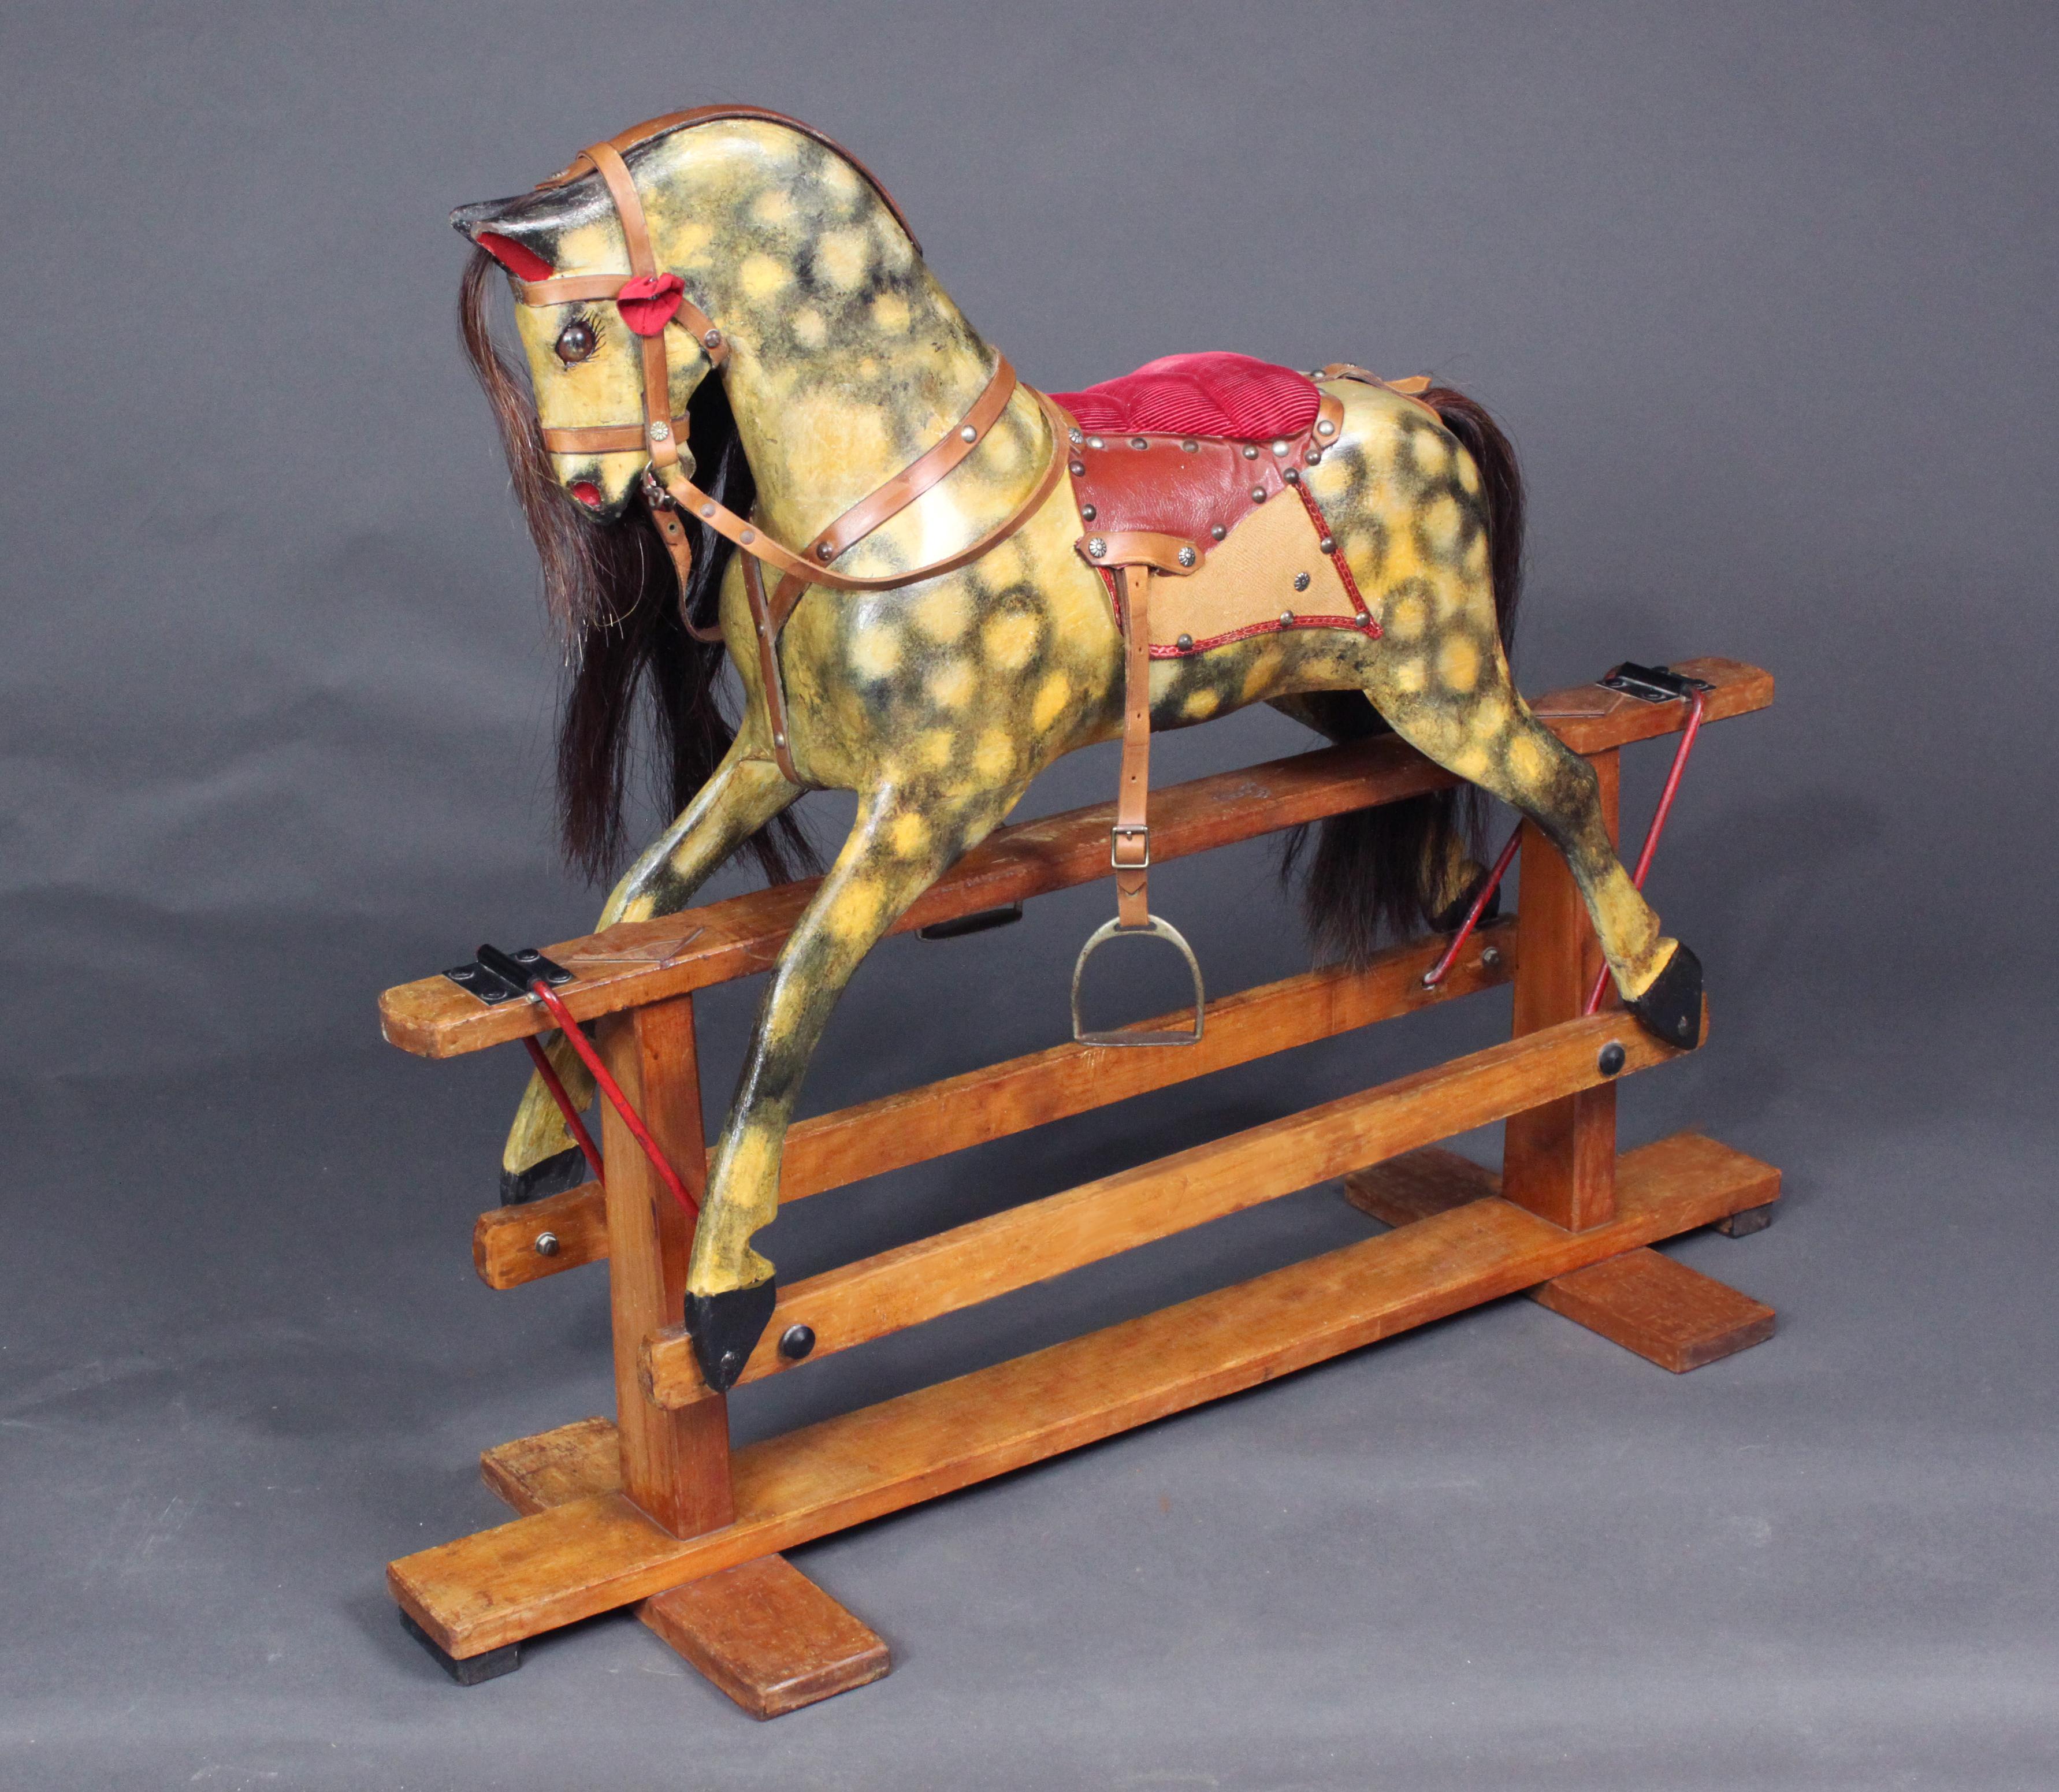 Un petit cheval à bascule Collinson fabriqué vers 1950.
La peinture est d'origine et a été restaurée si nécessaire. La sellerie est également en grande partie d'origine ; la crinière, la queue et le devant ont été remplacés.

Collinson fabrique